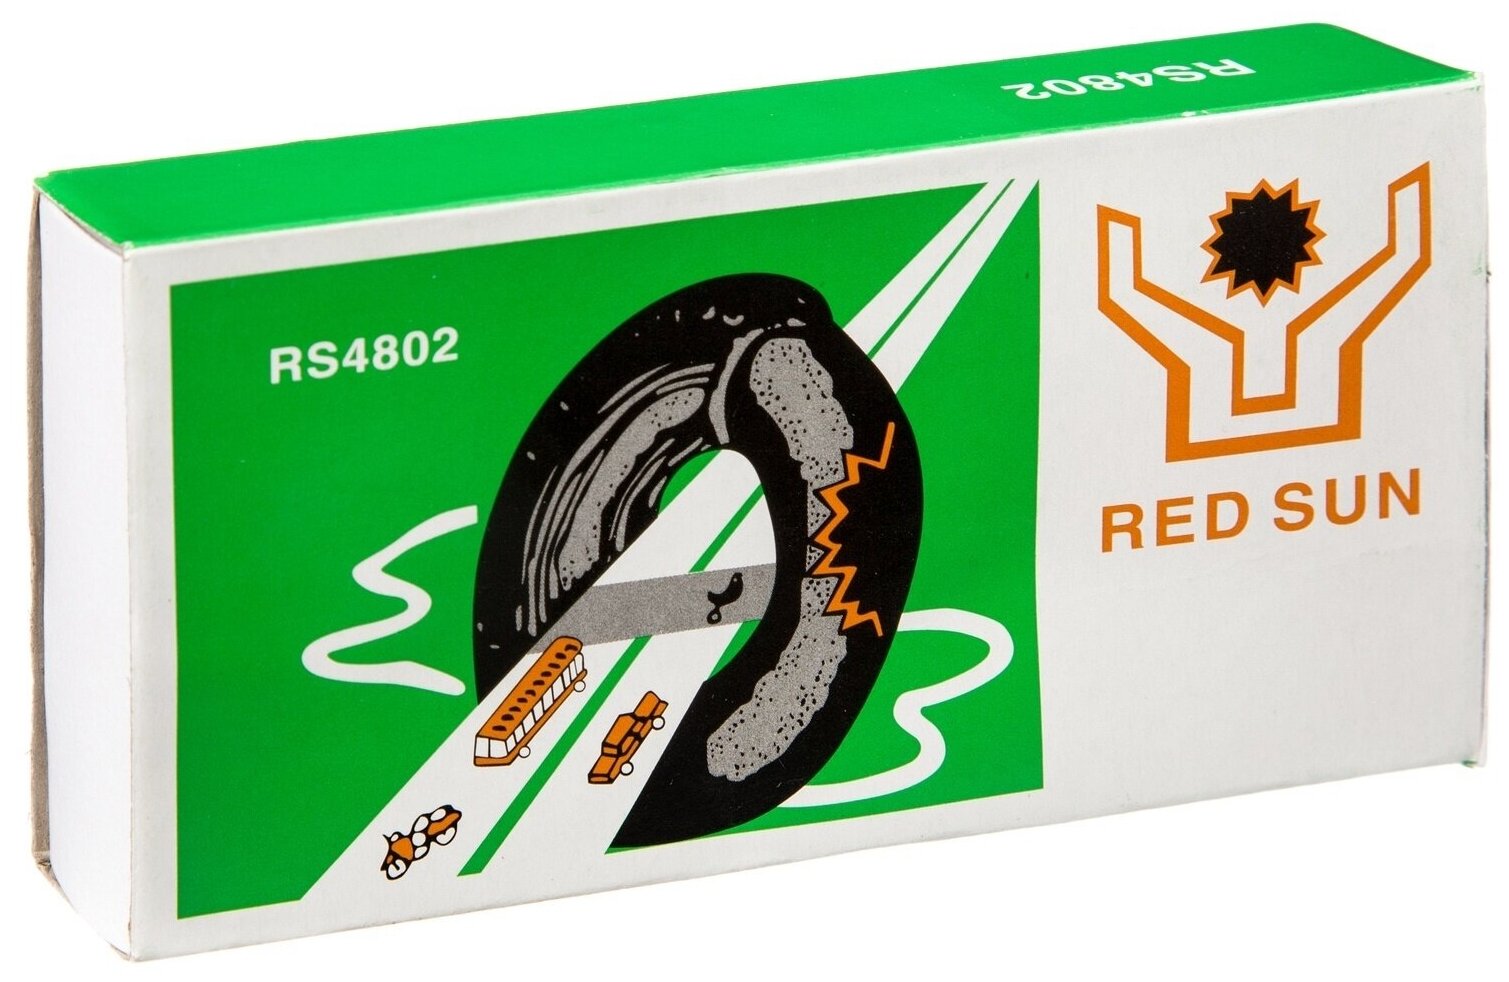 Велоаптечка STG для ремонта камер, RS4802, клей, заплатки, в коробке (Х98506)